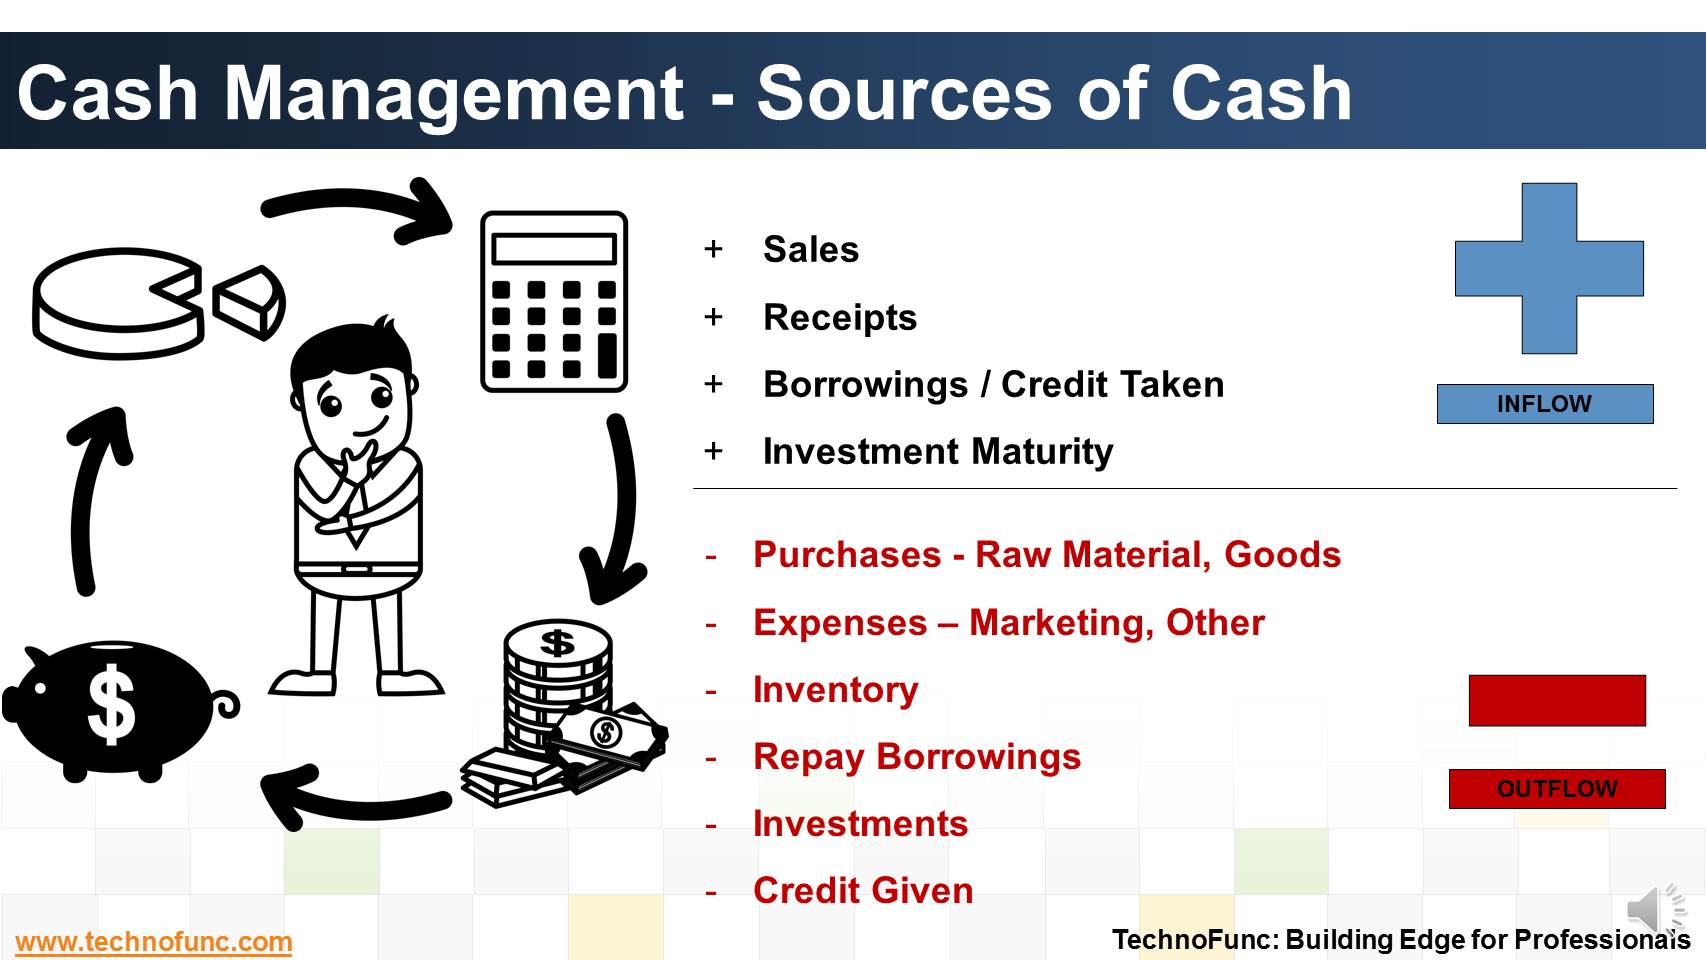 Sources of Cash